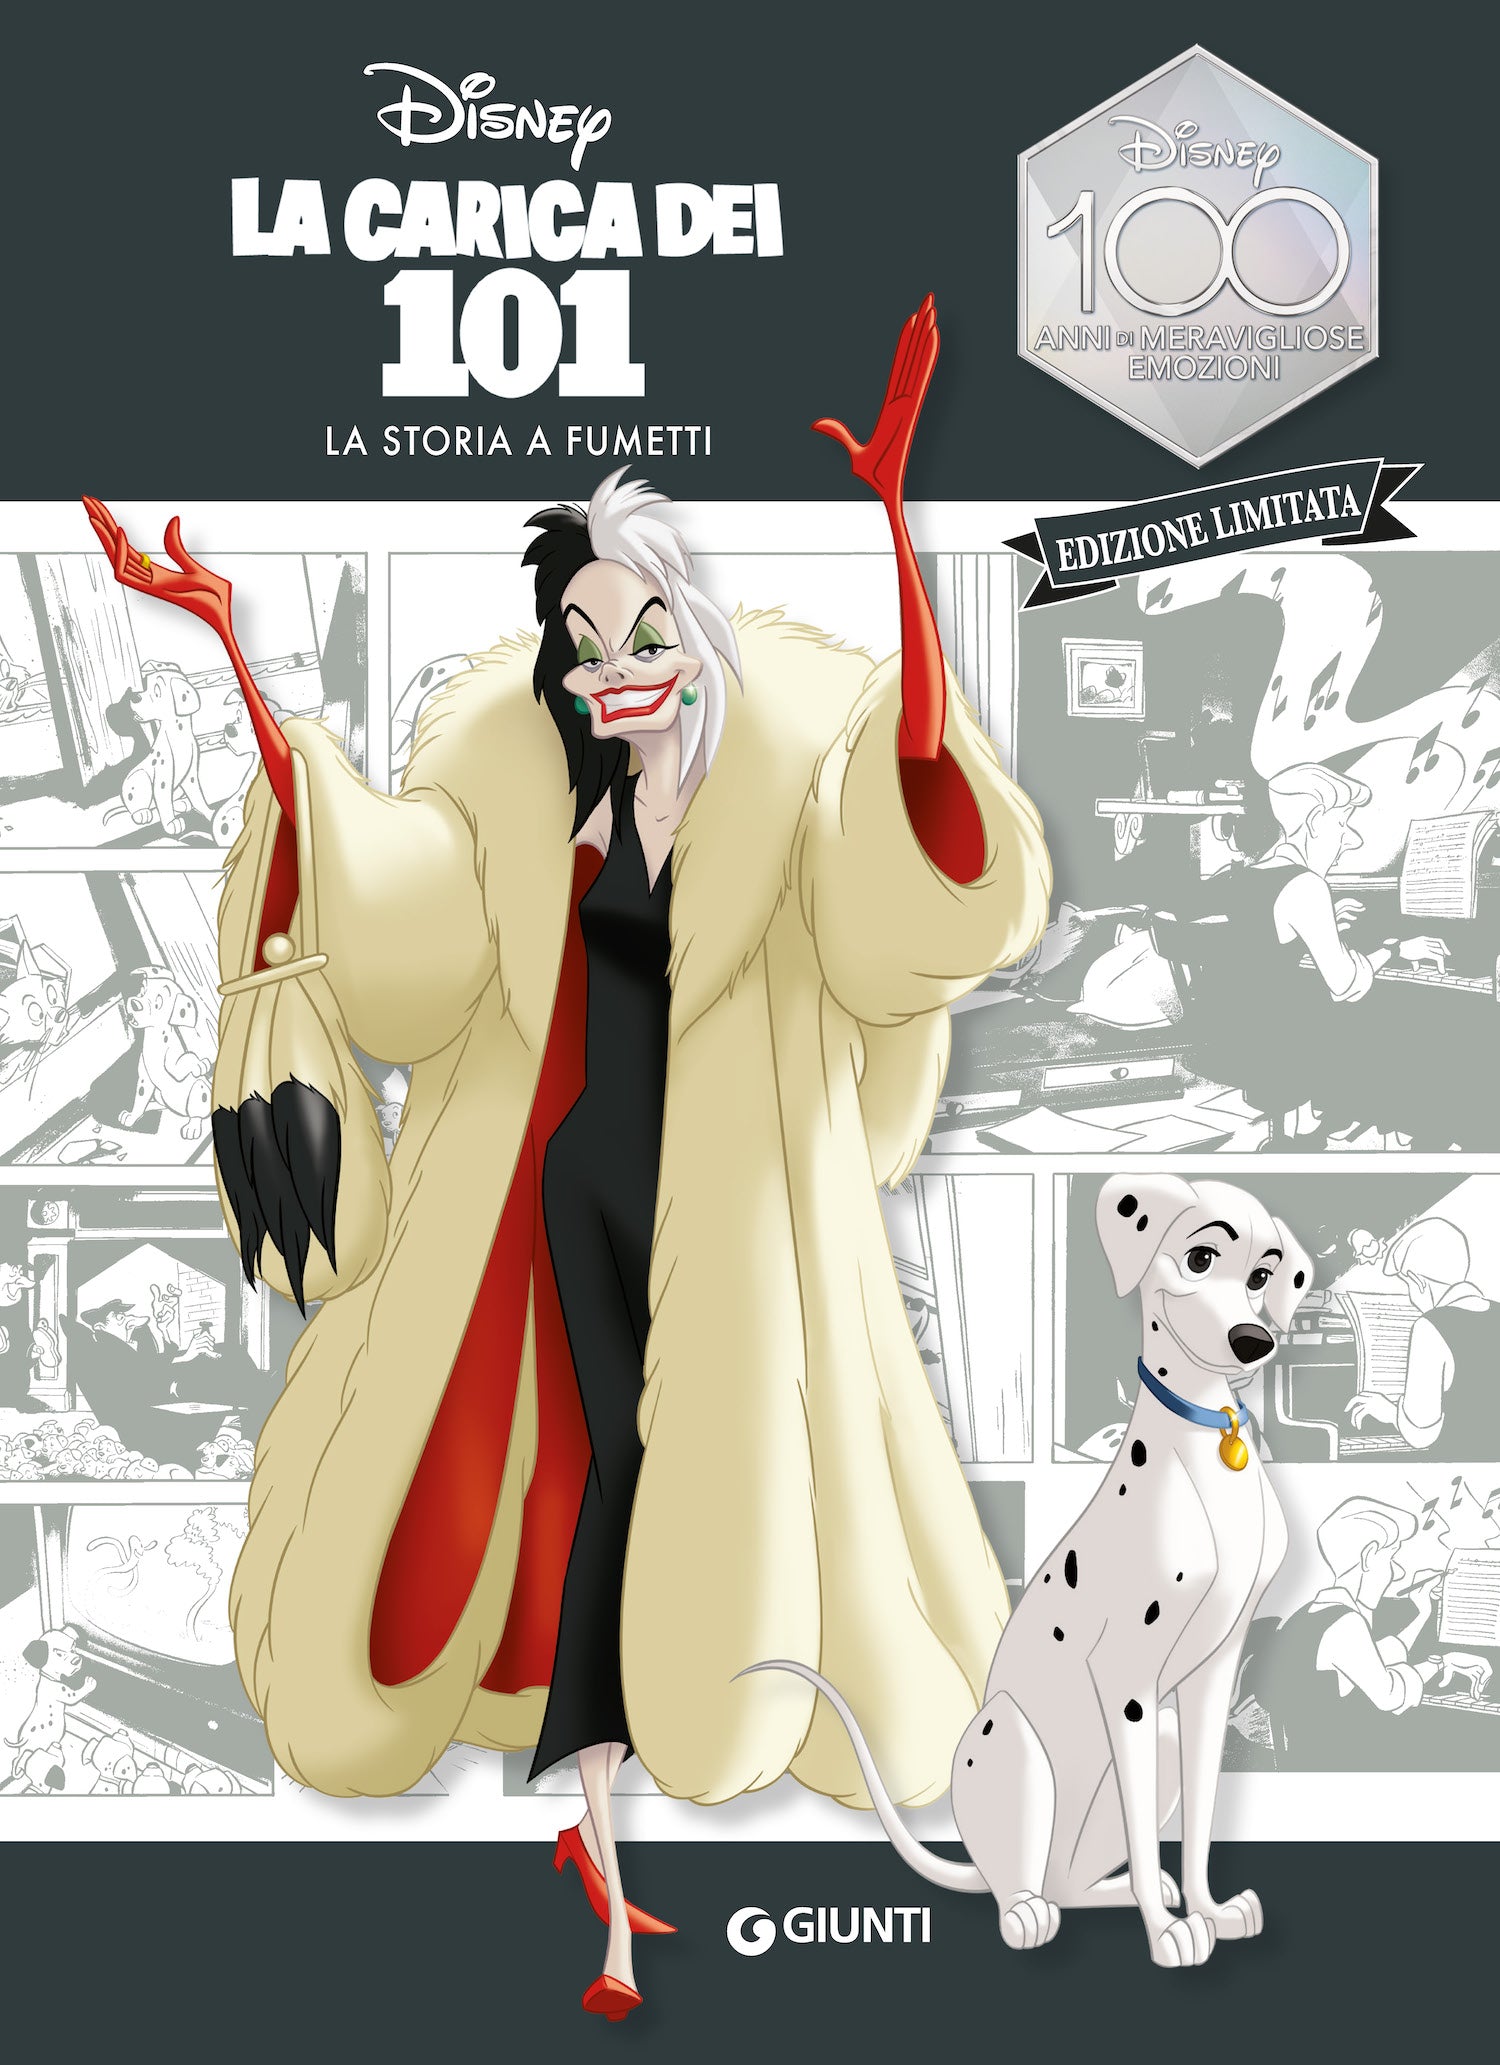 La Carica dei 101 La storia a fumetti Edizione limitata. Disney 100 Anni di meravigliose emozioni